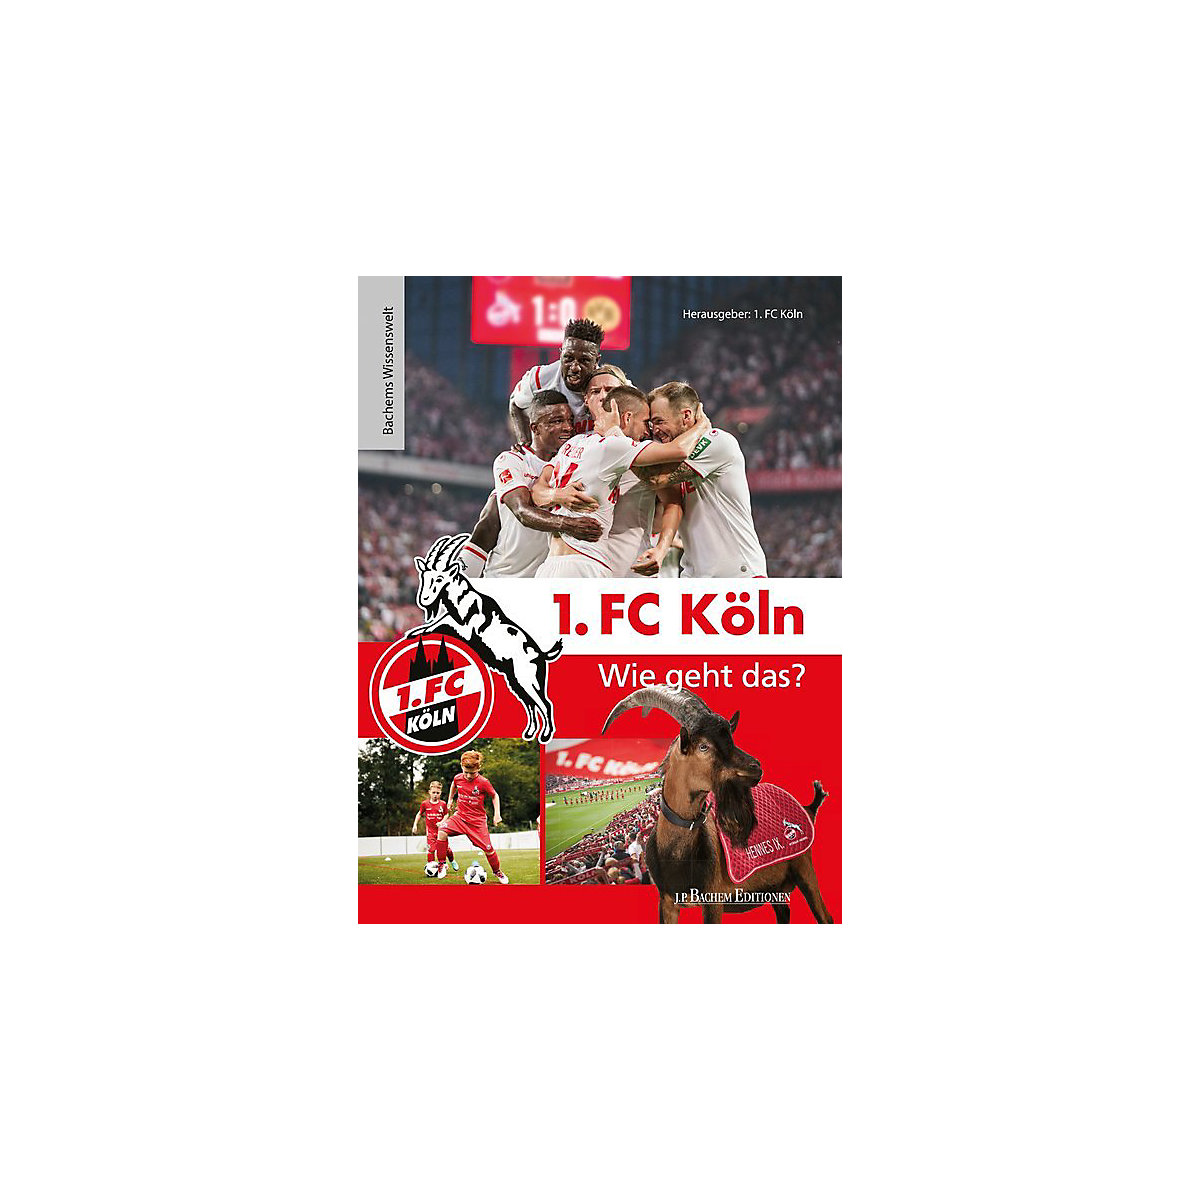 J. P. Bachem Verlag 1. FC Köln Wie geht das?